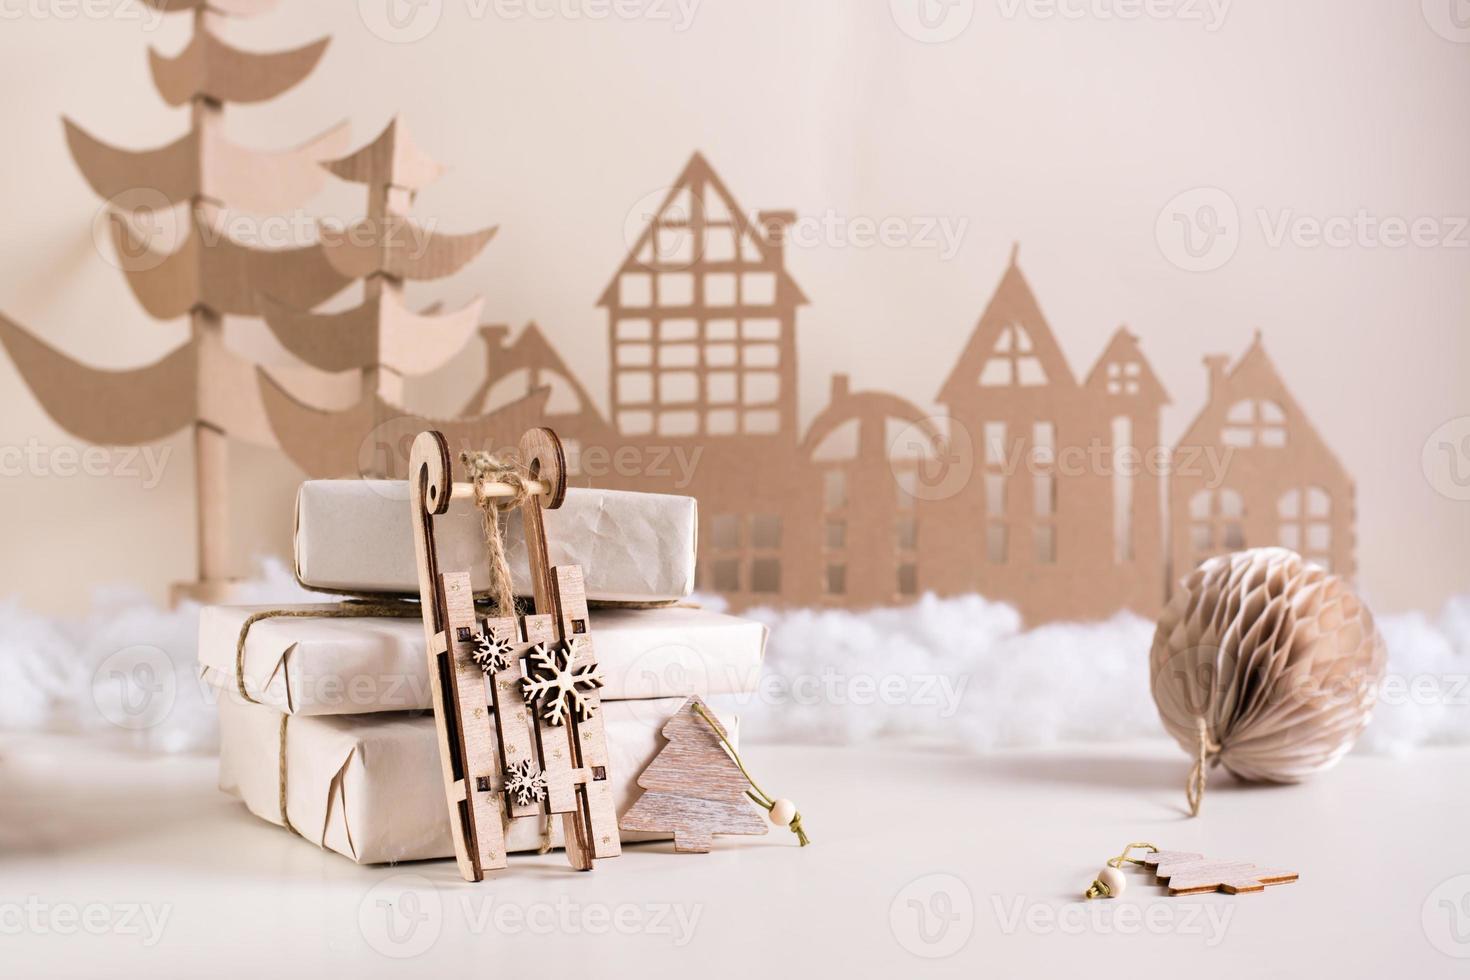 decoración casera navideña de bricolaje: trineo de madera cerca de una pila de regalos, árbol de cartón y casa. hecho a mano foto